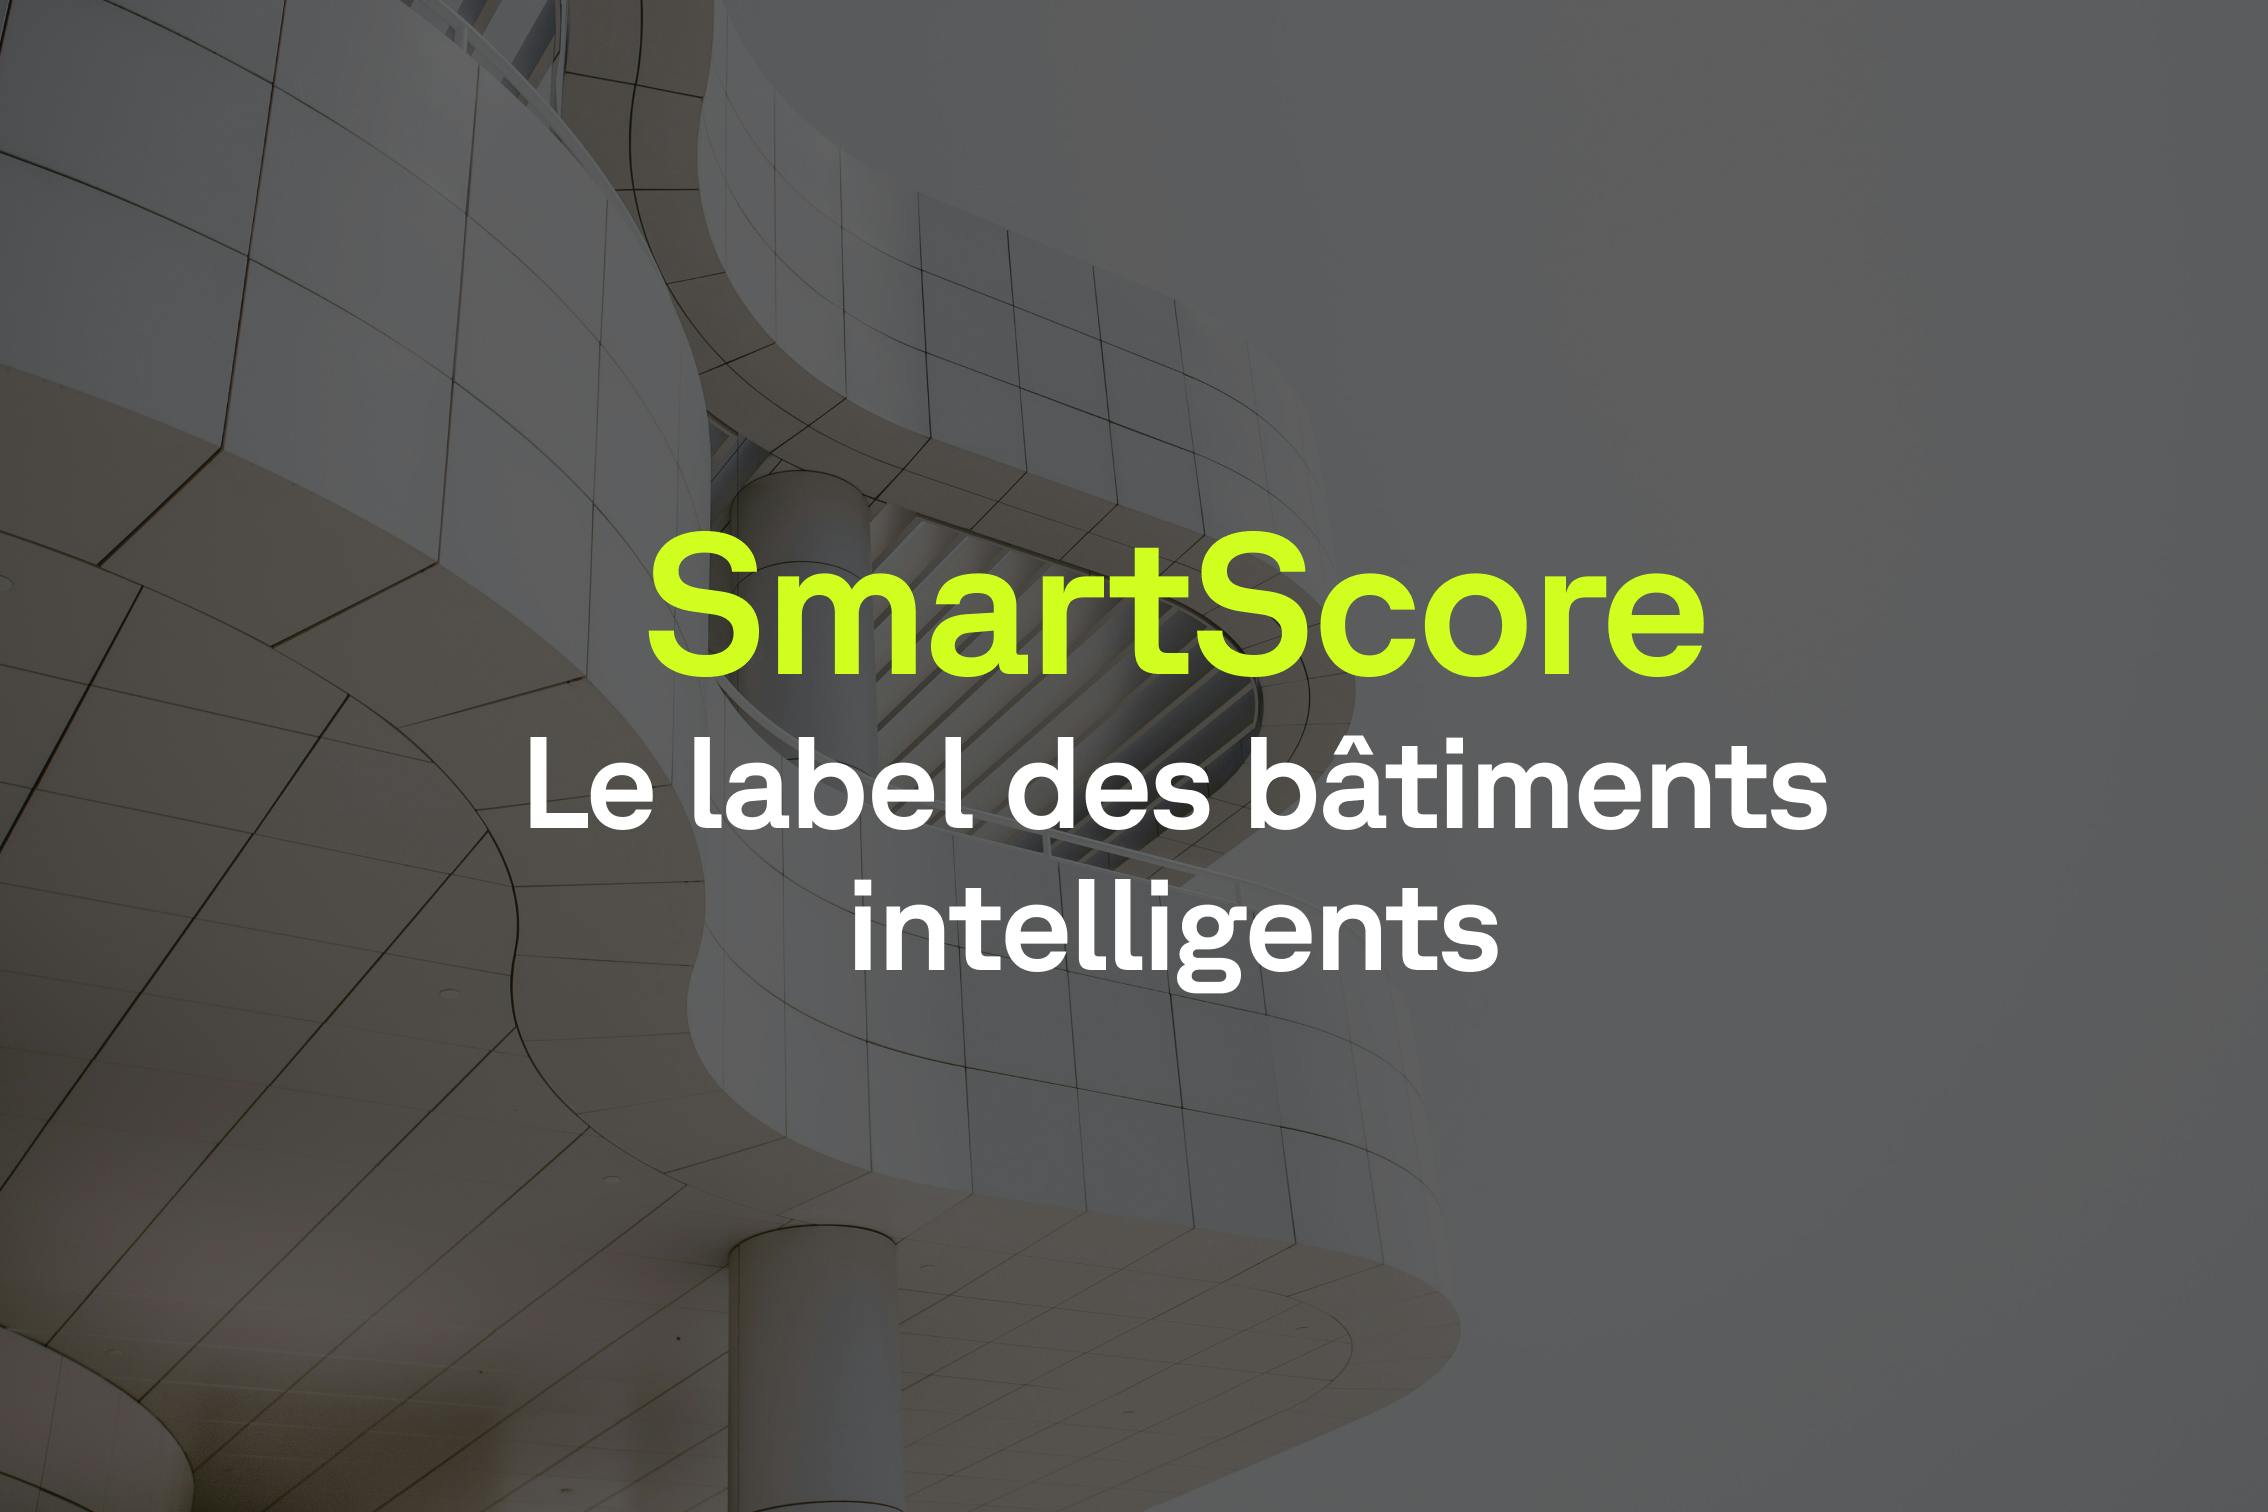 Les immeubles intelligents ont leur label : le SmartScore